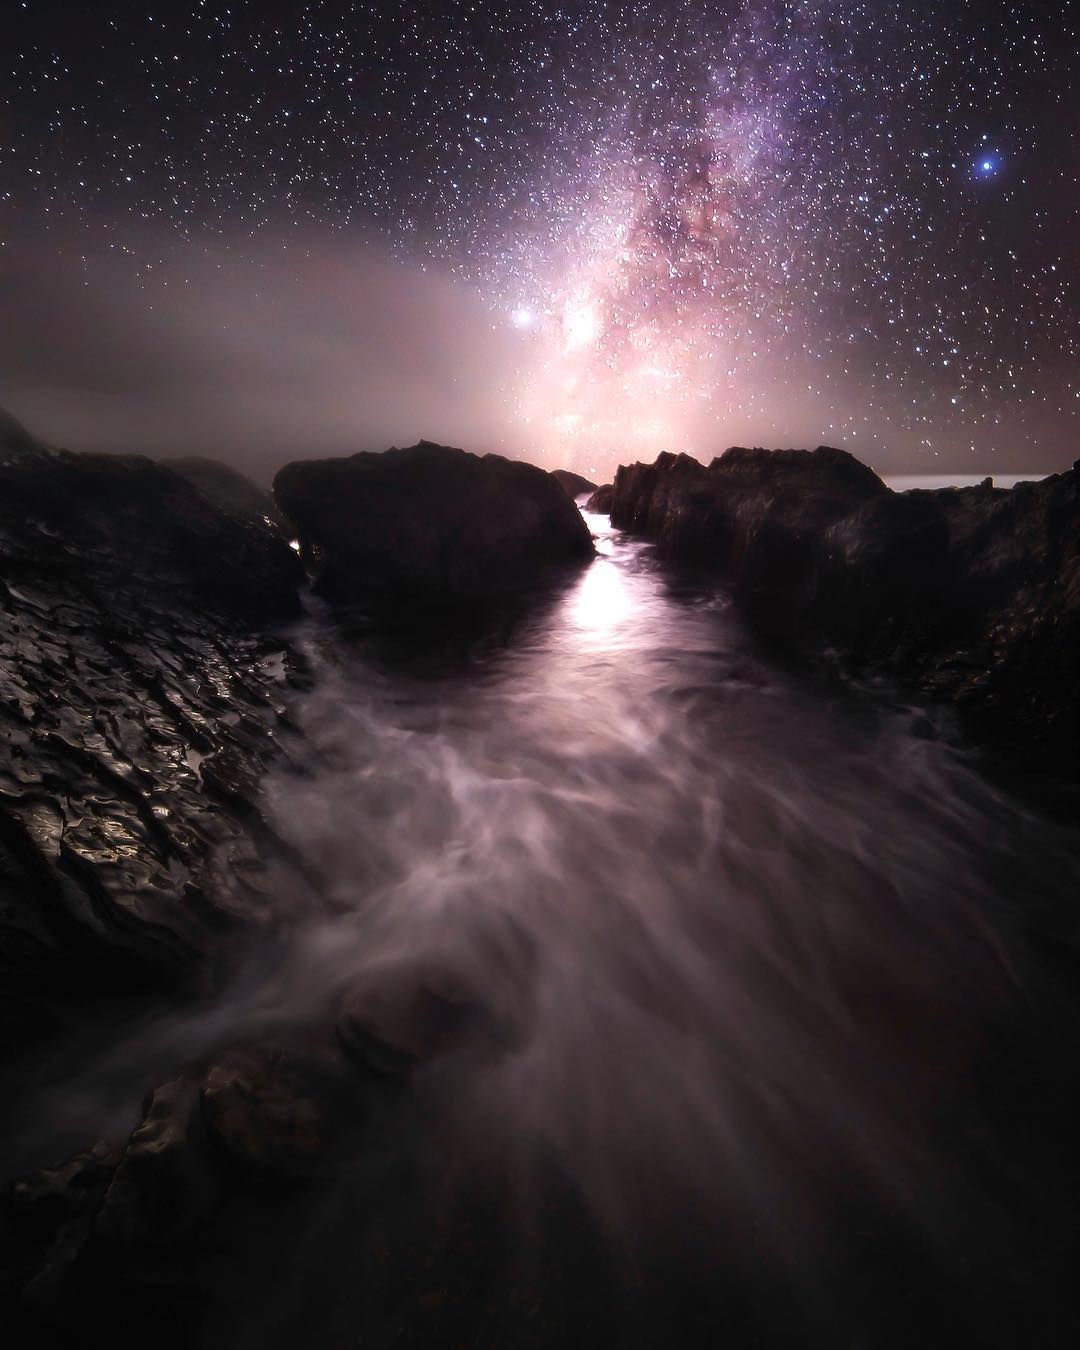 Потрясающие астрофотографии, ночные и морские пейзажи талантливого фотографа (Фото)